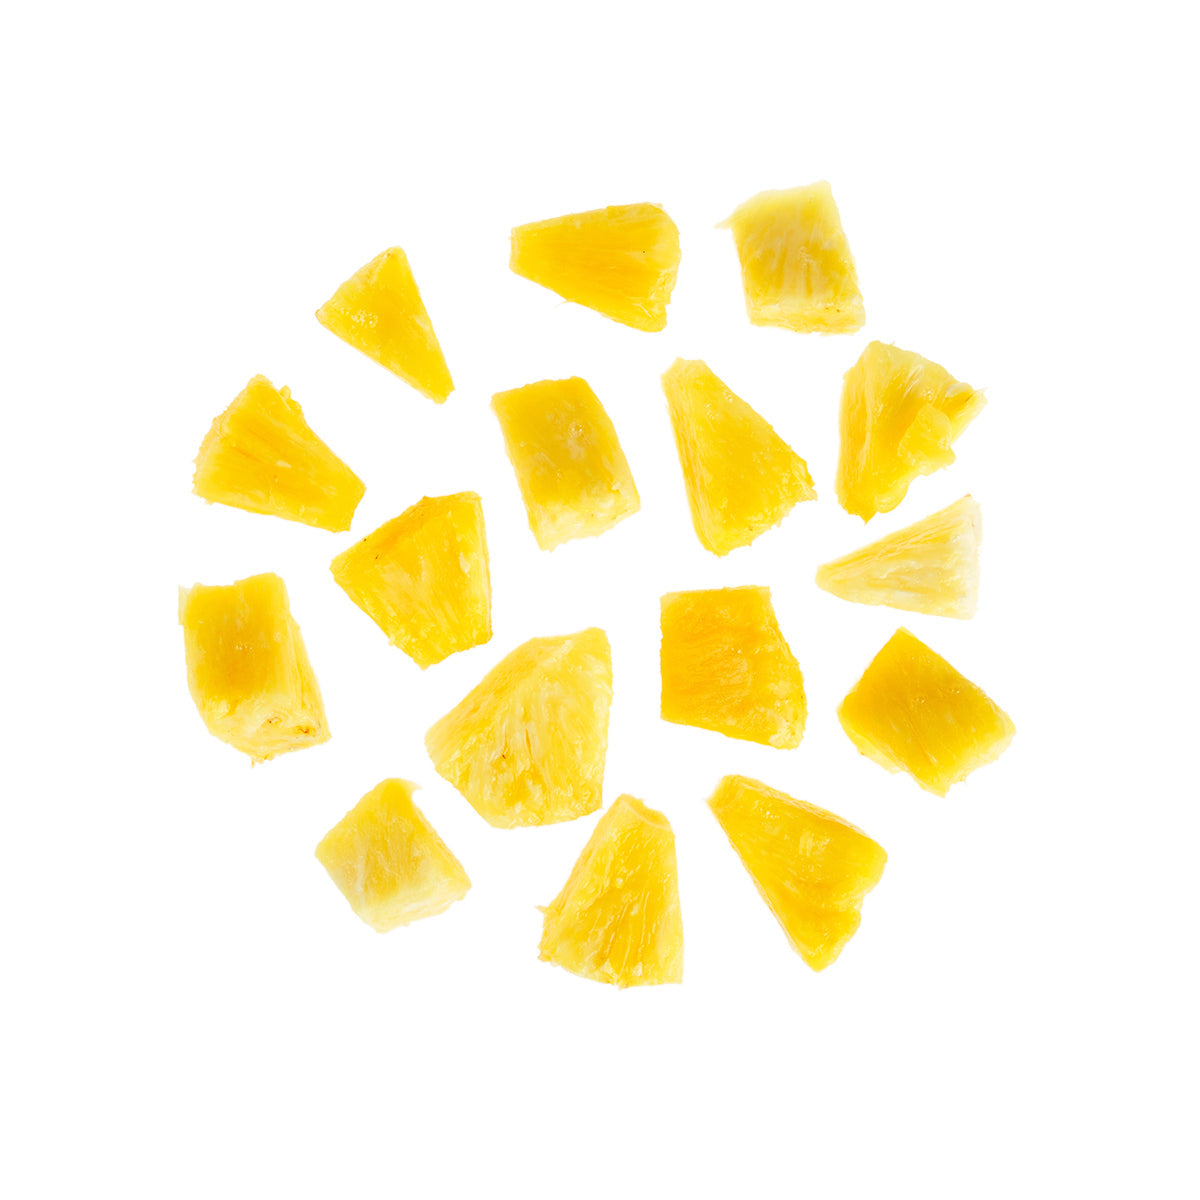 BoxNCase Golden Pineapple Chunks 6 LB